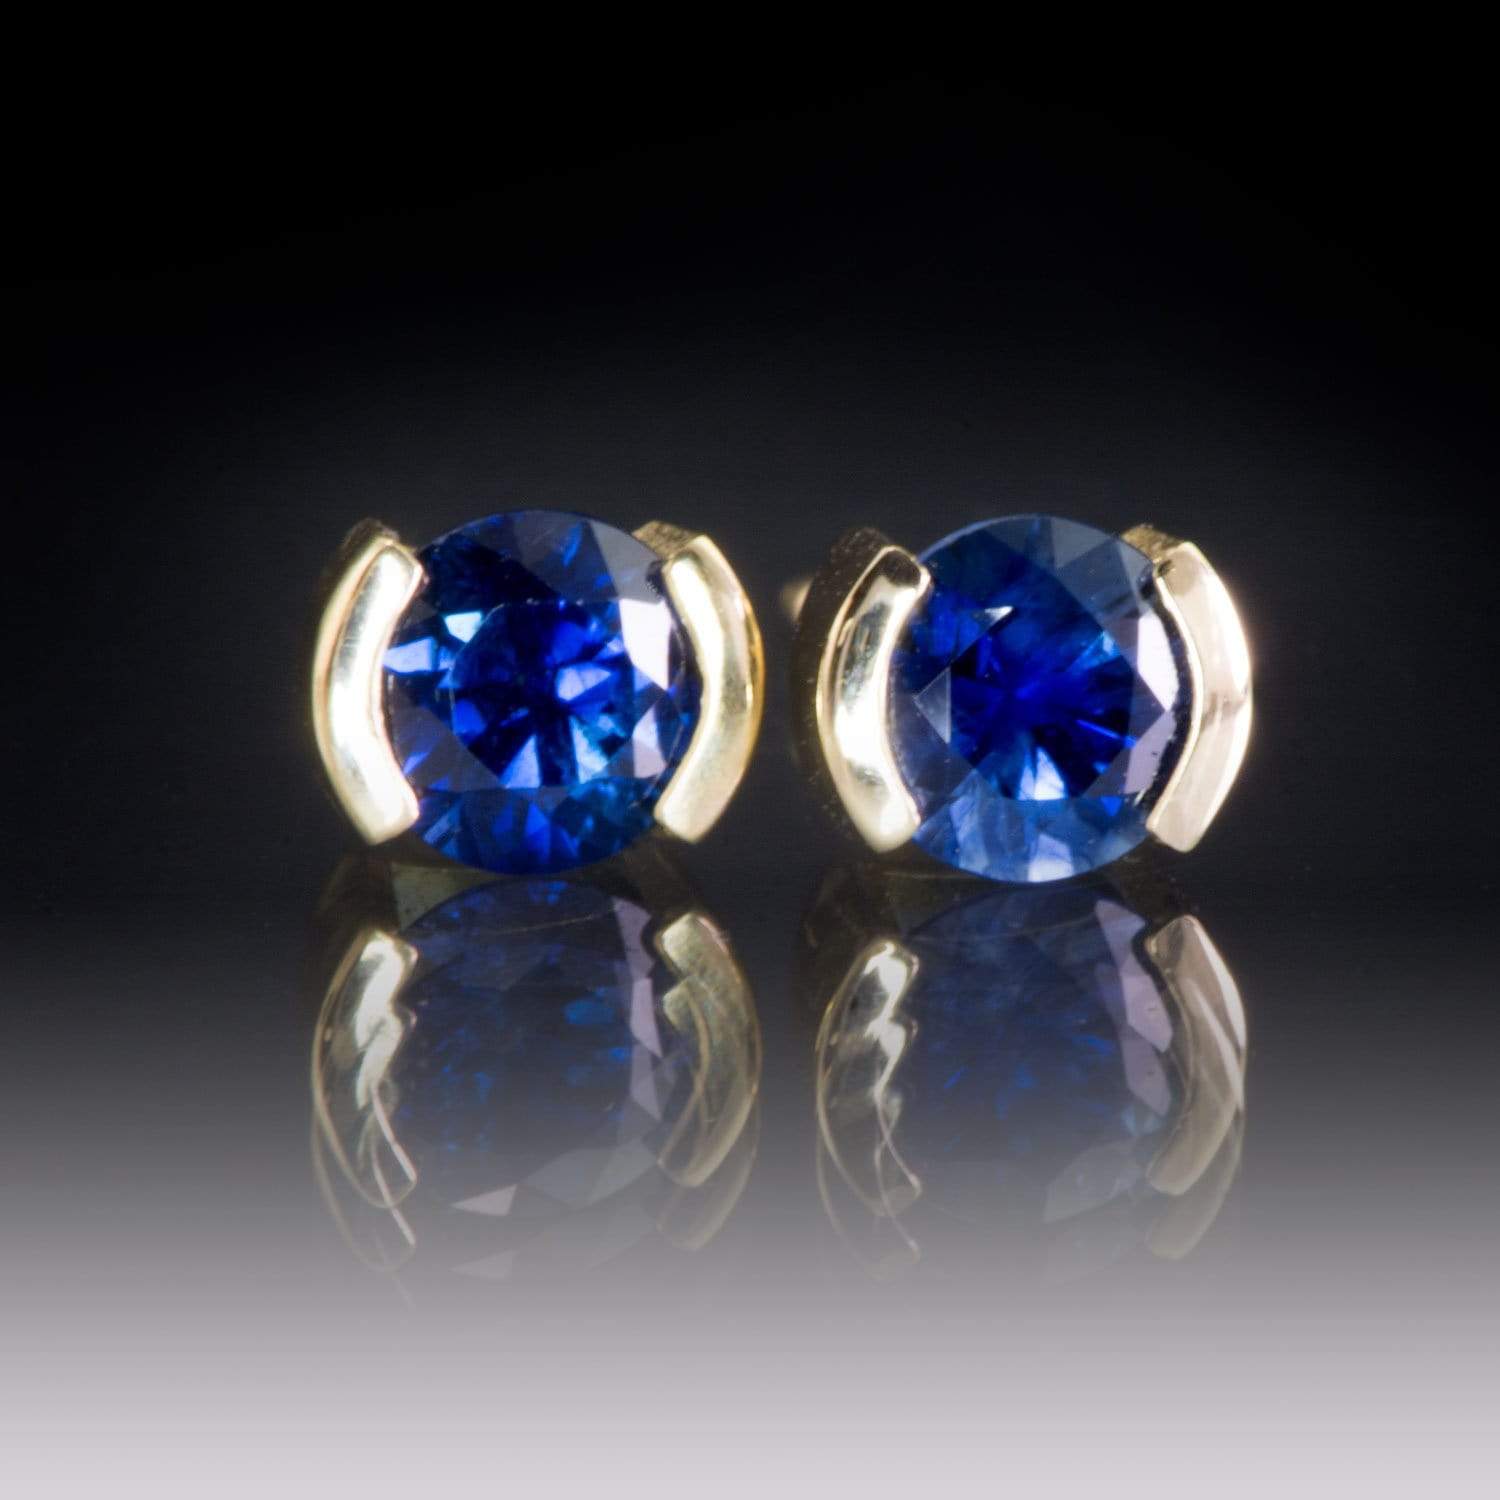 Blue Sapphire 14k Gold Half Bezel Stud Earrings 14k Yellow Gold / 4mm Blue Sapphire Earrings by Nodeform